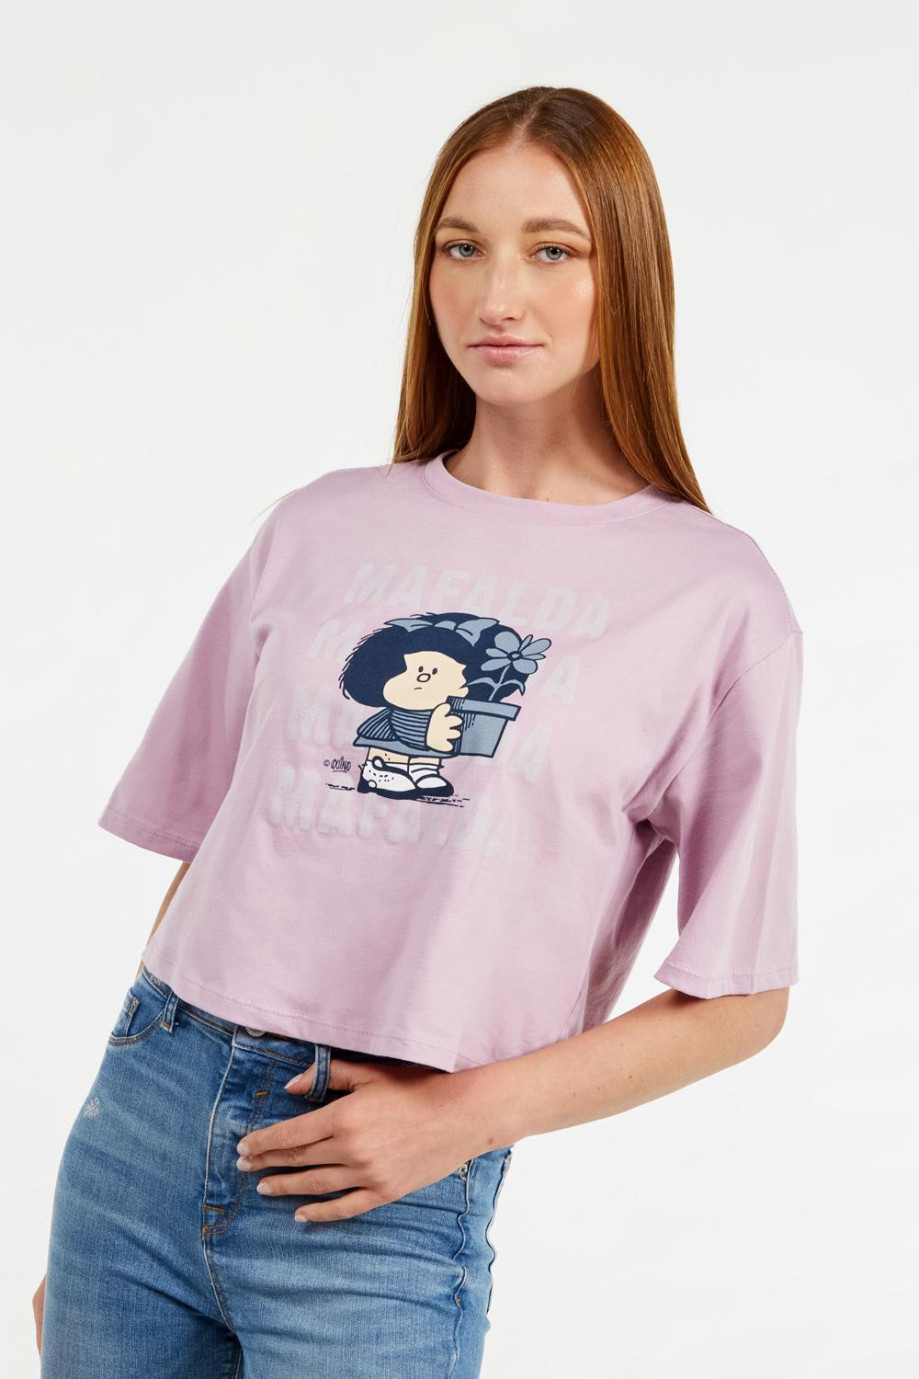 Camiseta crop top lila clara manga corta con estampado de Mafalda